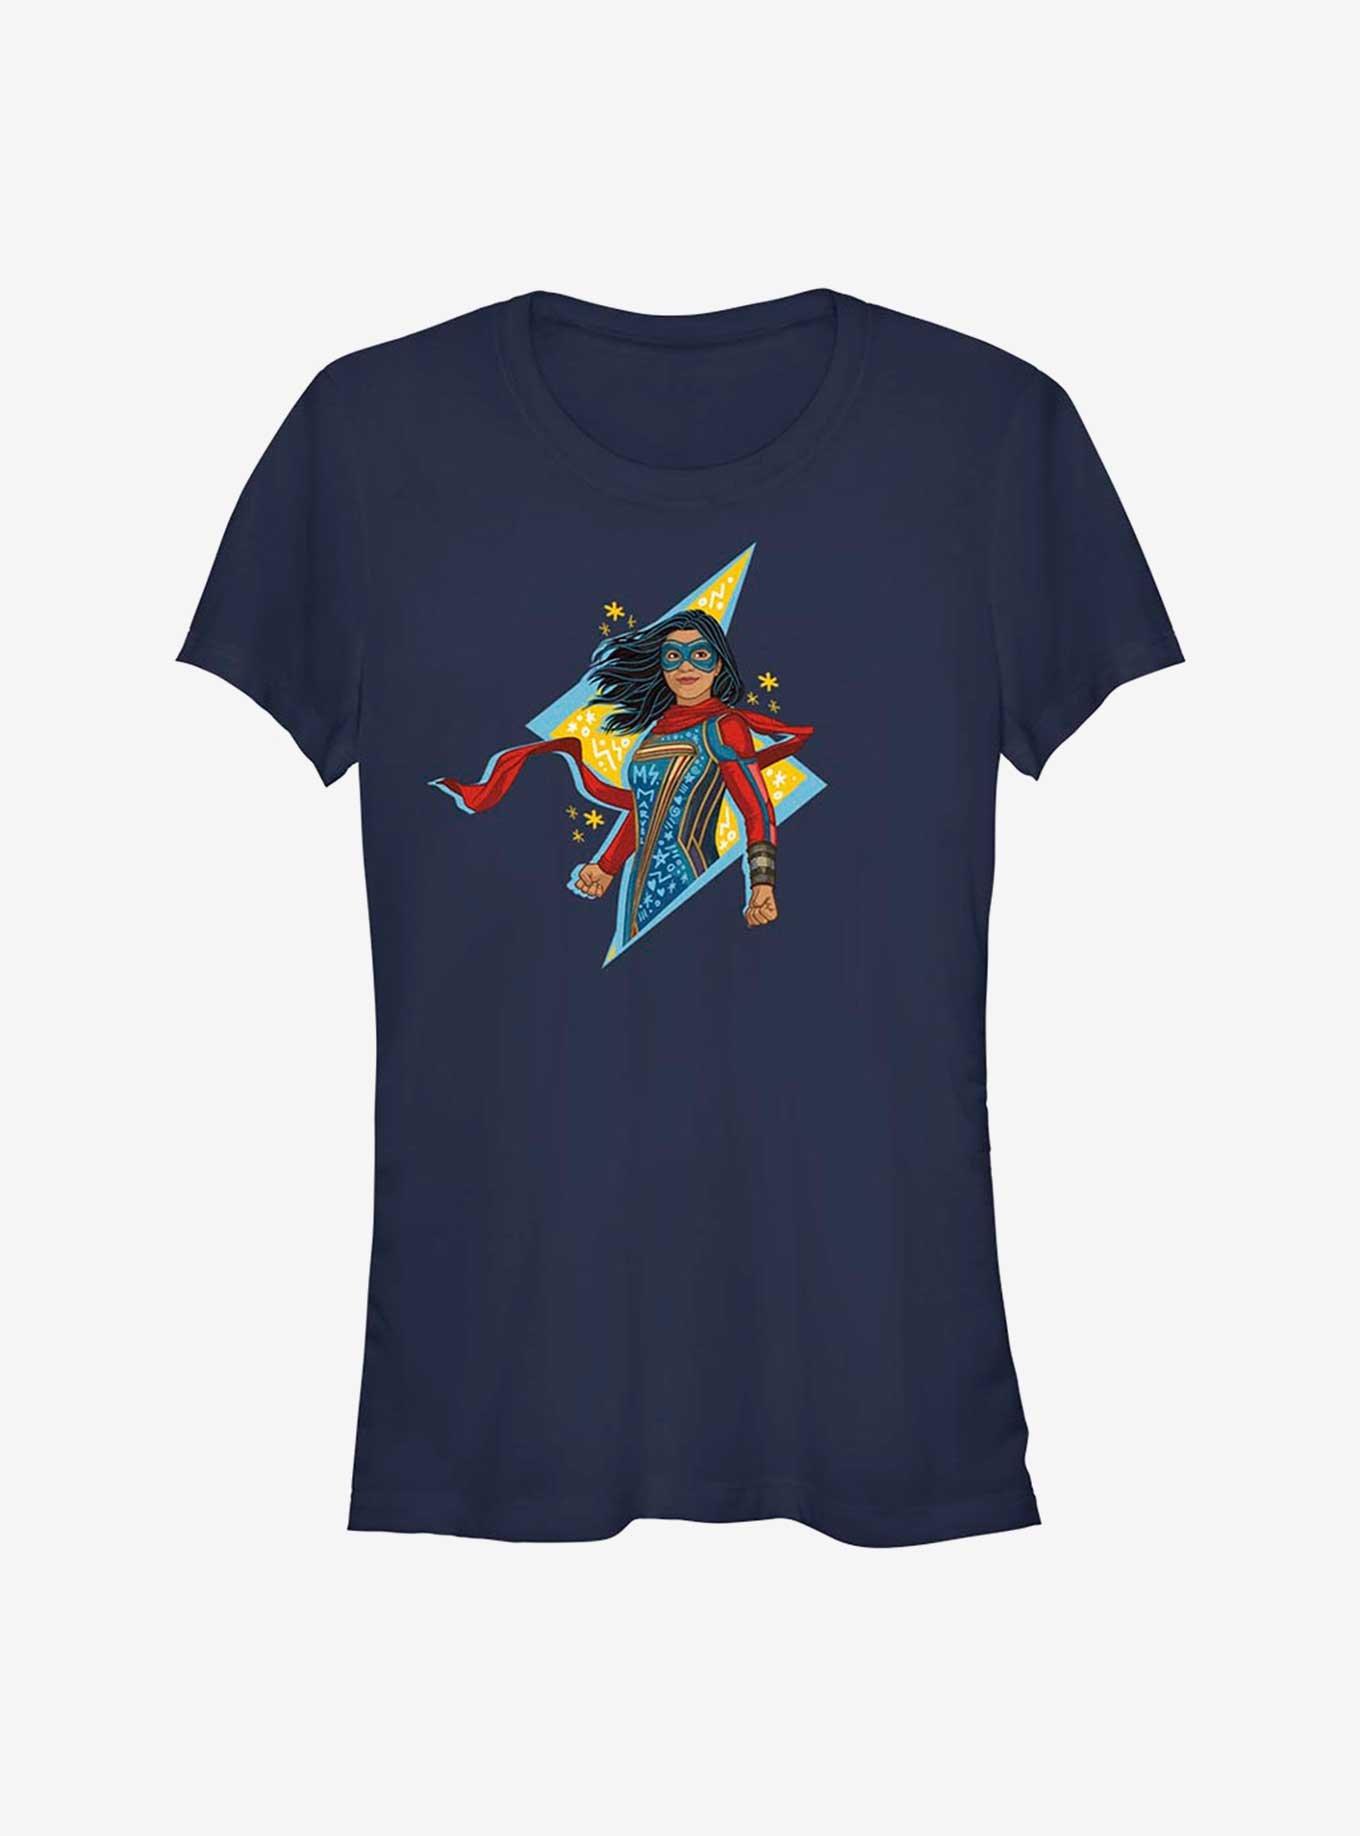 Marvel Ms. Marvel Lightning Doodle Girls T-Shirt, NAVY, hi-res